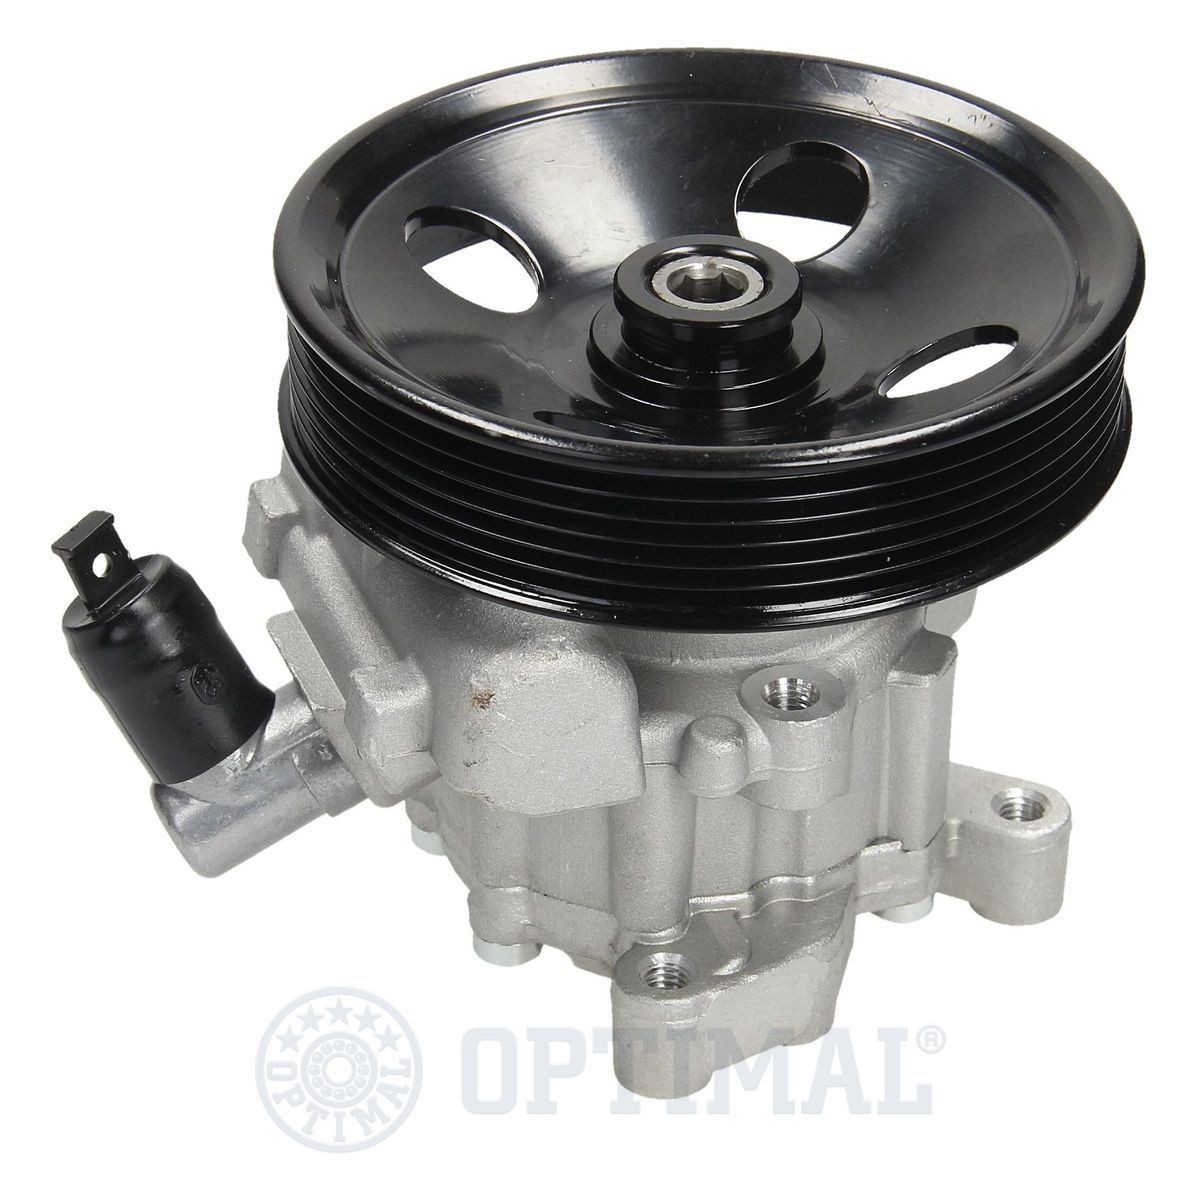 OPTIMAL HP-746 Power steering pump A00 446 69 301